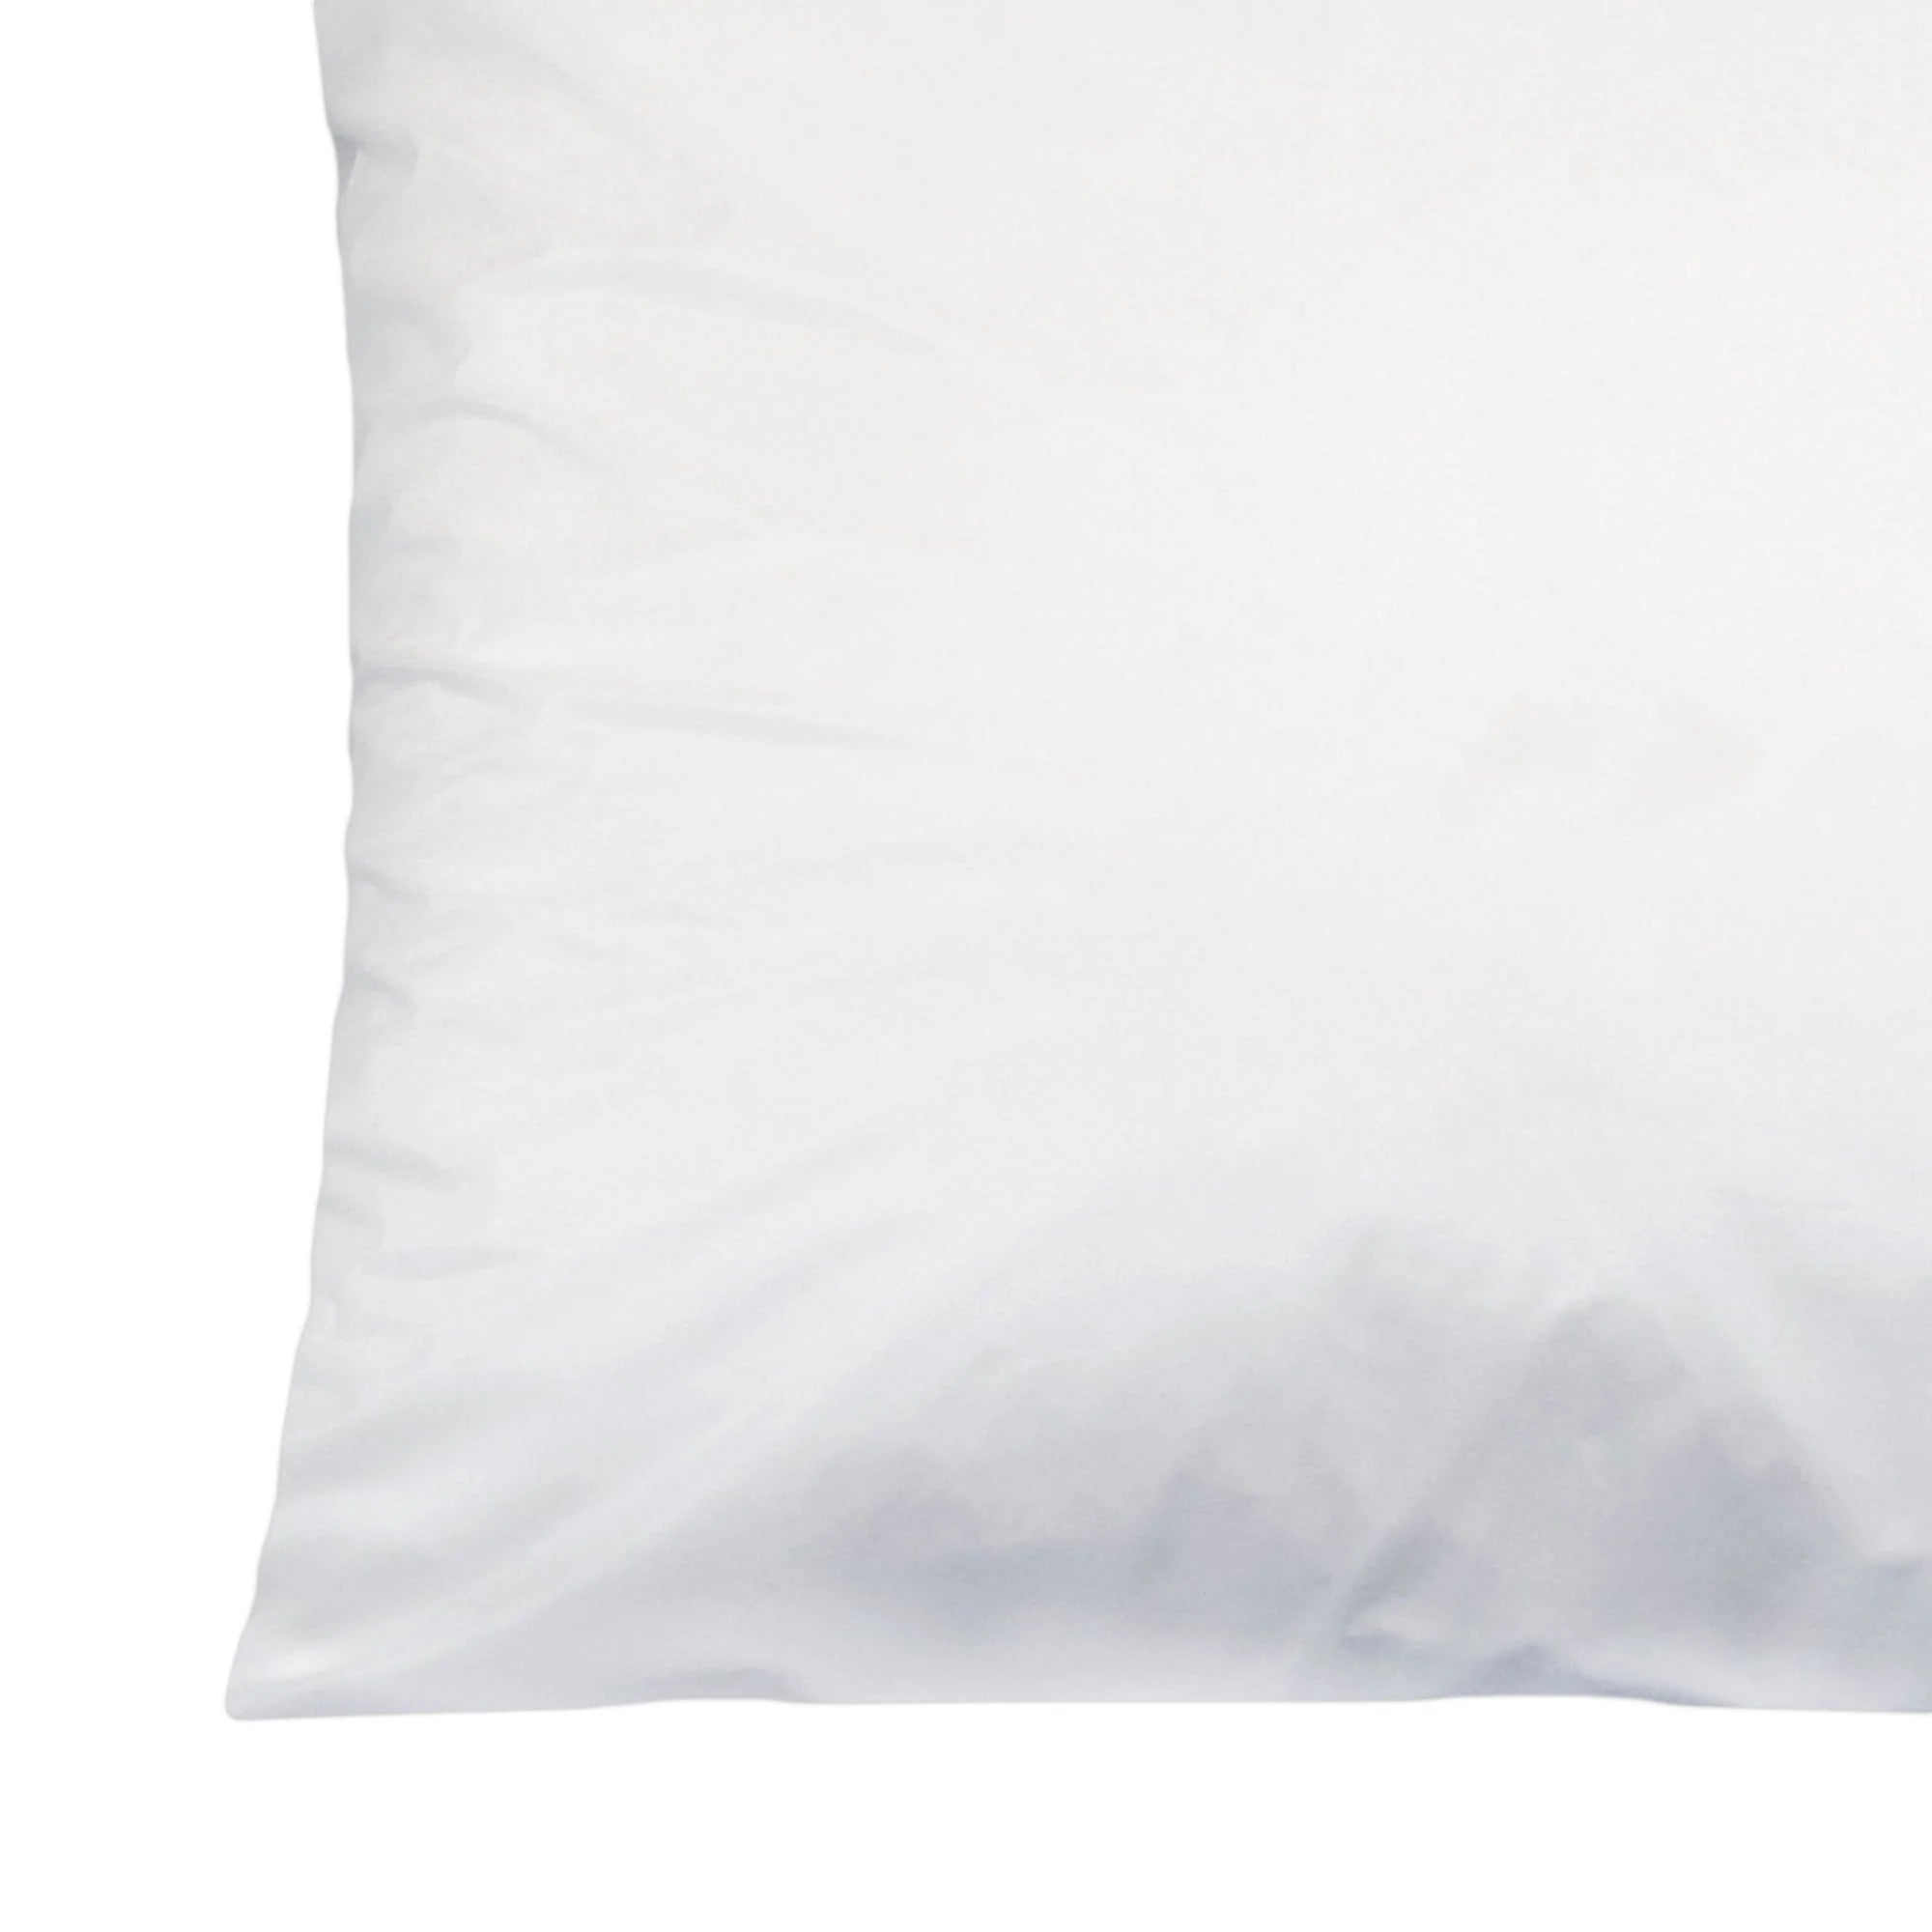 Standard Zippered Vinyl Pillow Covers (Pair) - Standard Size